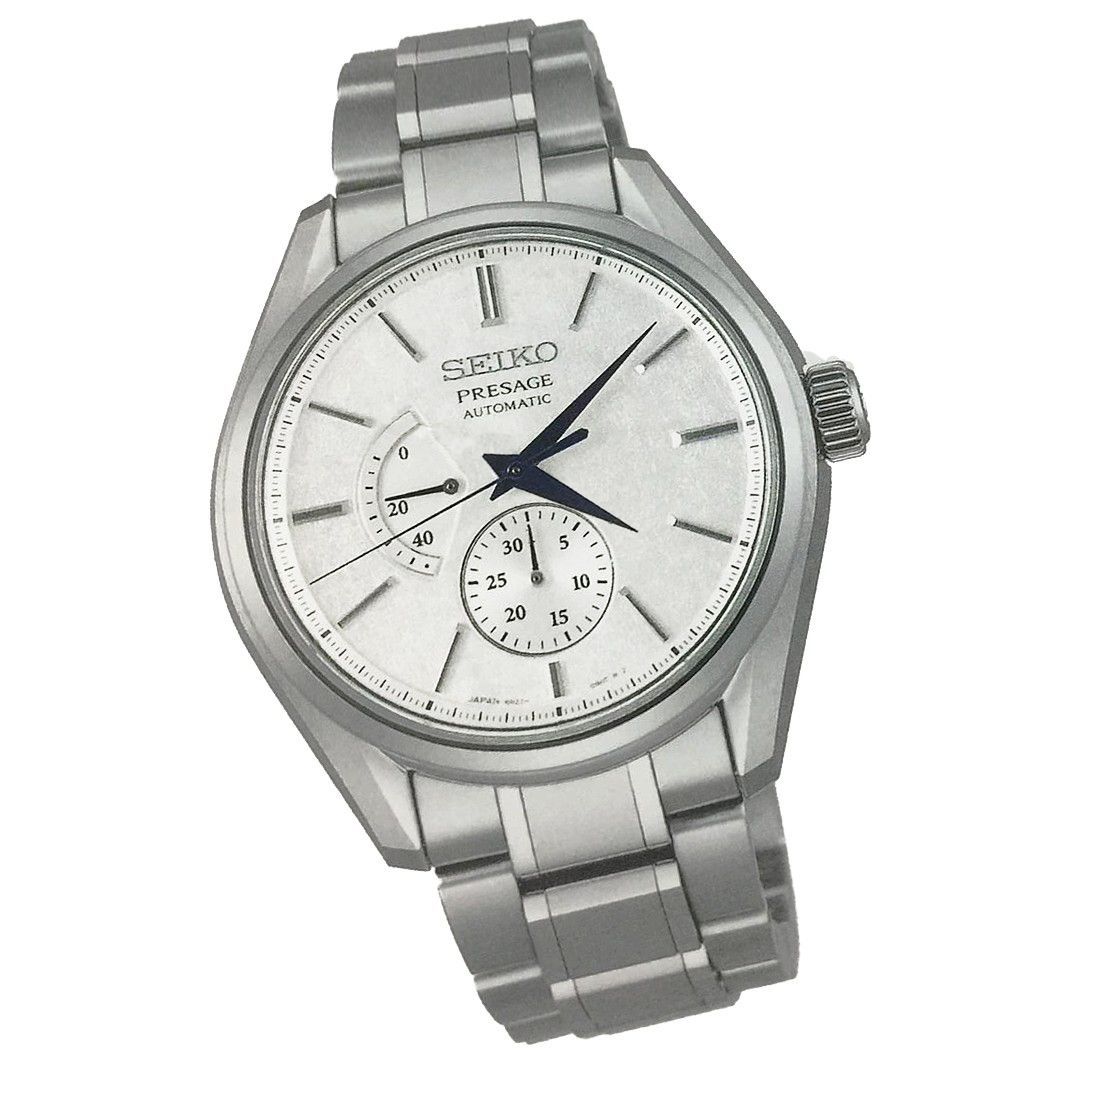 Seiko JDM Presage White Baby GS Snowflake Men's Titanium Watch w/ Pow. Res. Indicator SARW041 - Prestige